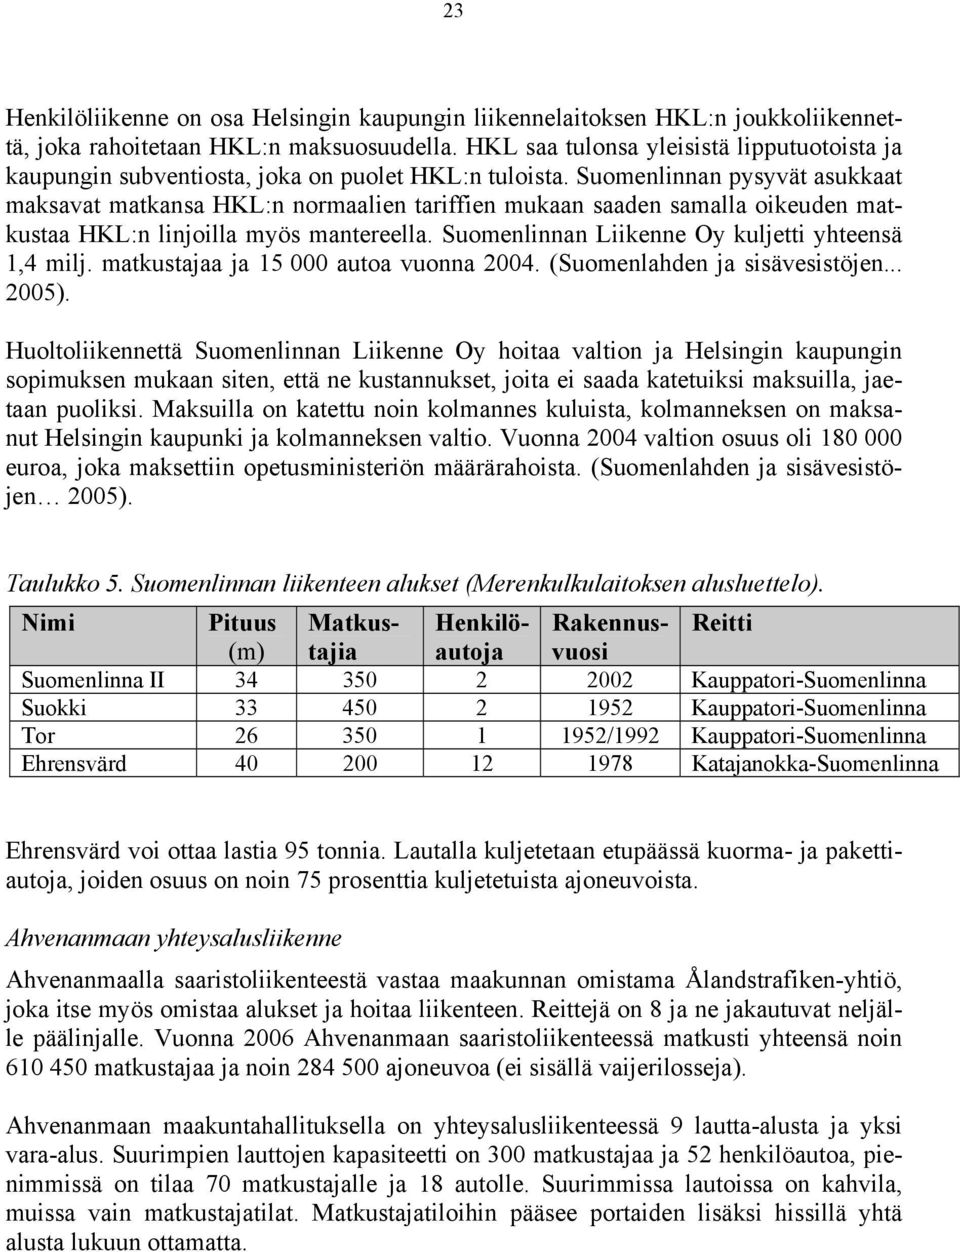 Suomenlinnan pysyvät asukkaat maksavat matkansa HKL:n normaalien tariffien mukaan saaden samalla oikeuden matkustaa HKL:n linjoilla myös mantereella.